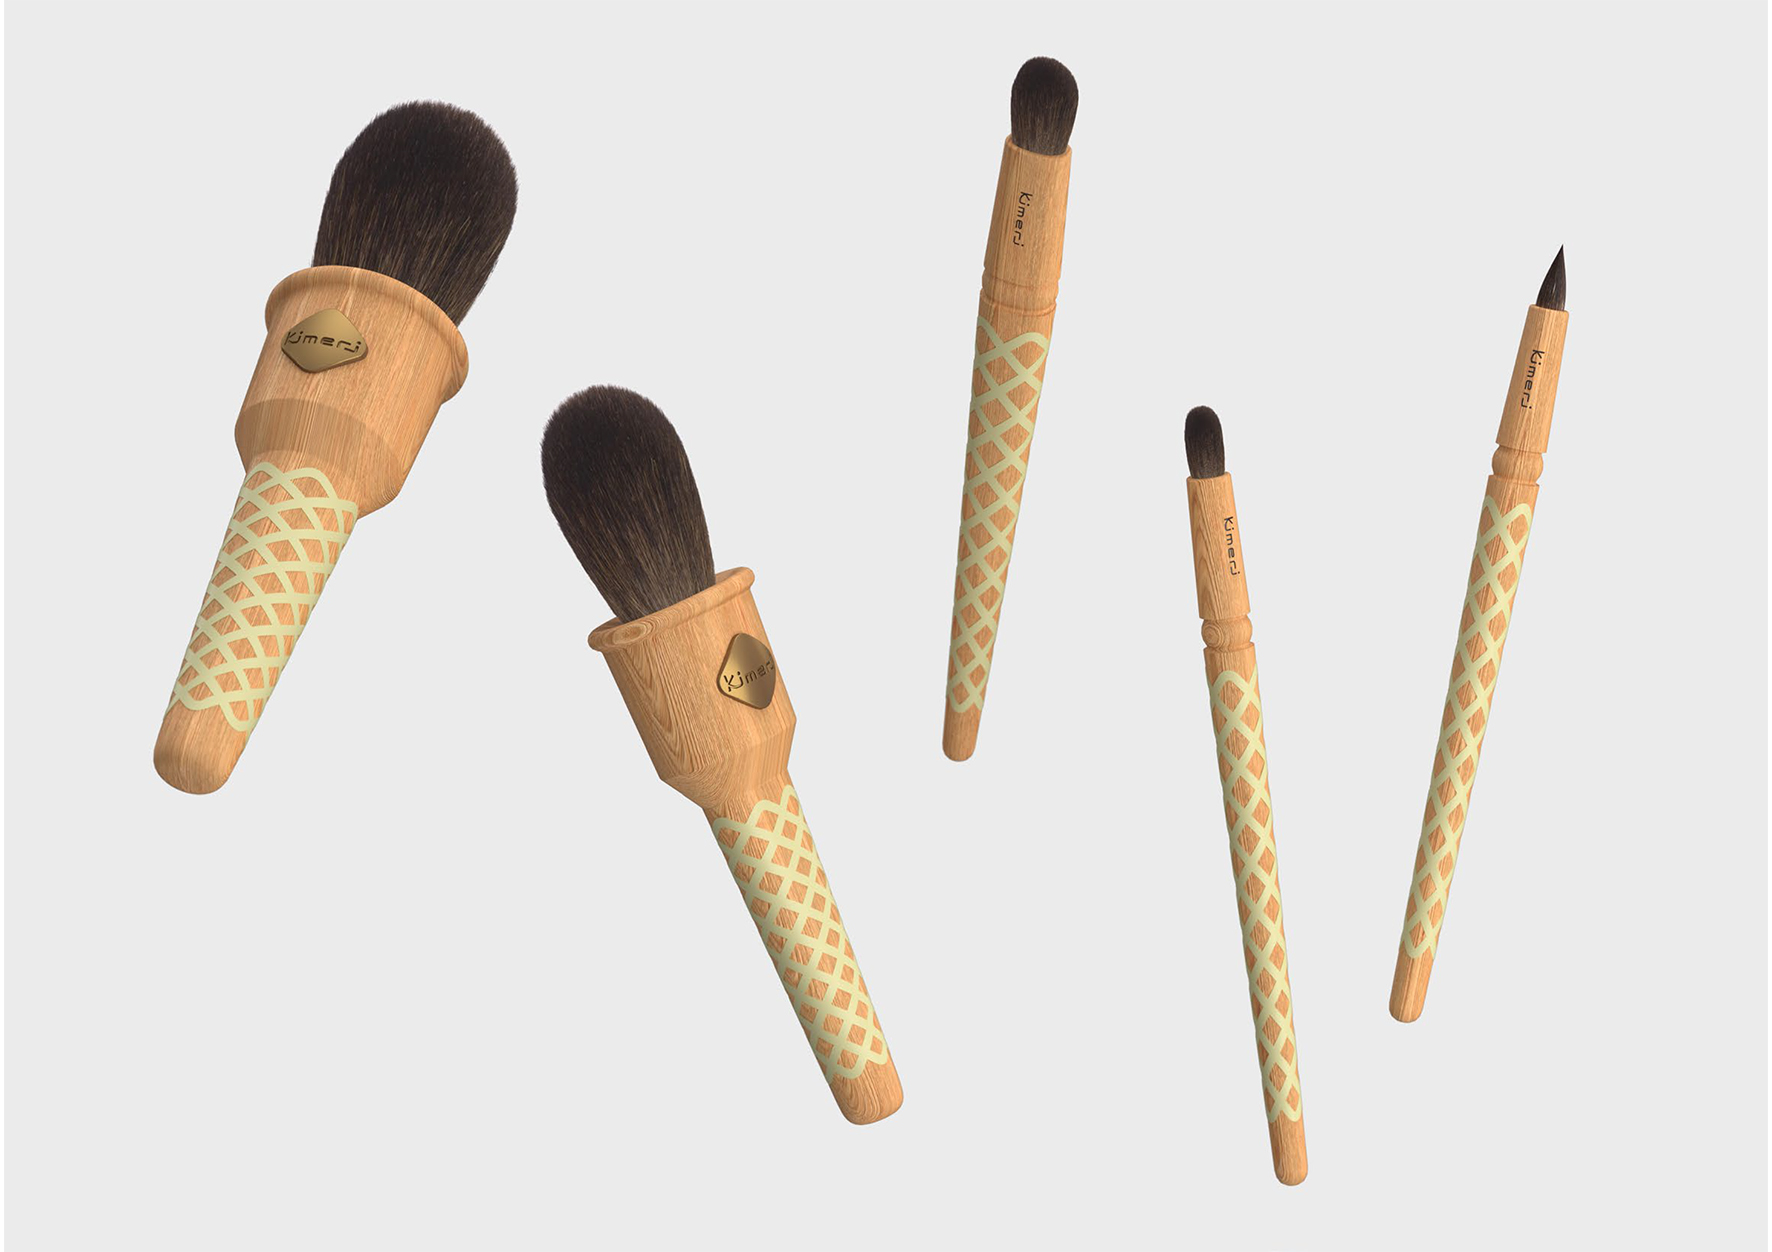 アイスクリームのようなOTONA KAWAIIユニークデザインの本格メイクブラシ  メイドインジャンパンの熊野筆新ブランド「Kimeri（キメリ）」誕生